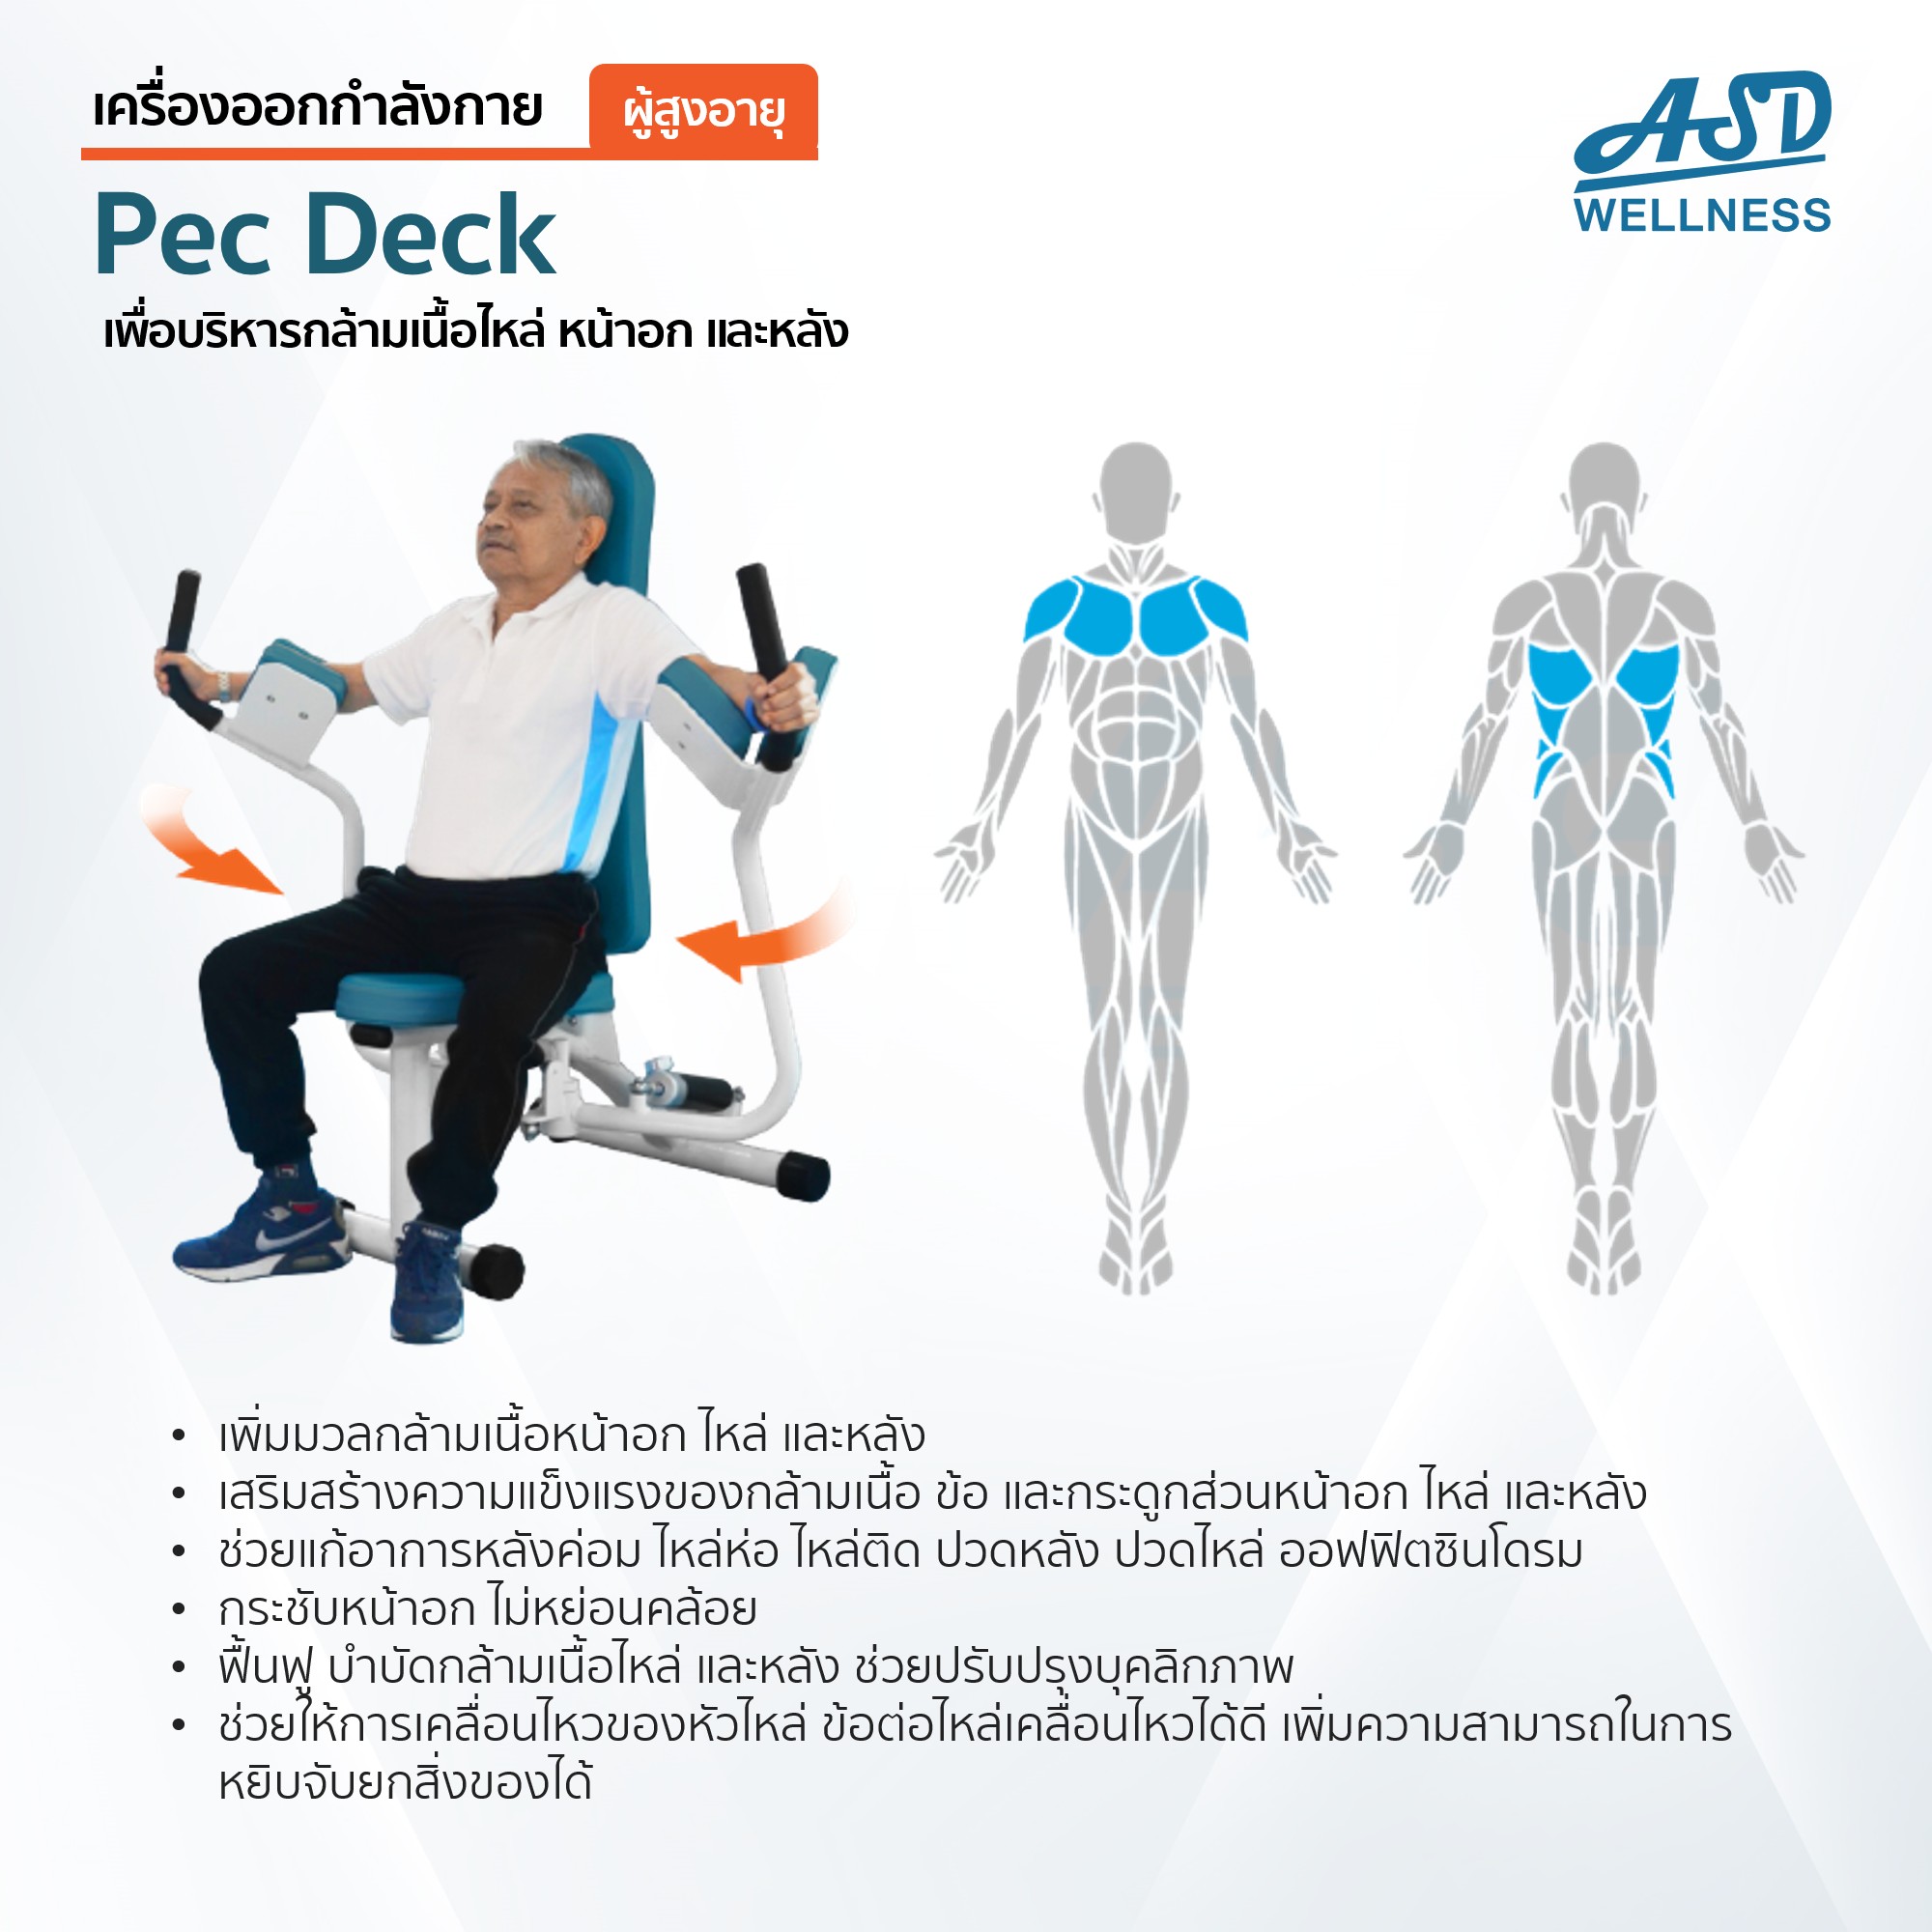 เครื่องออกกำลังกาย สำหรับผู้สูงอายุ เพื่อบริหารกล้ามเนื้อไหล่ หน้าอก และหลัง Pec Deck